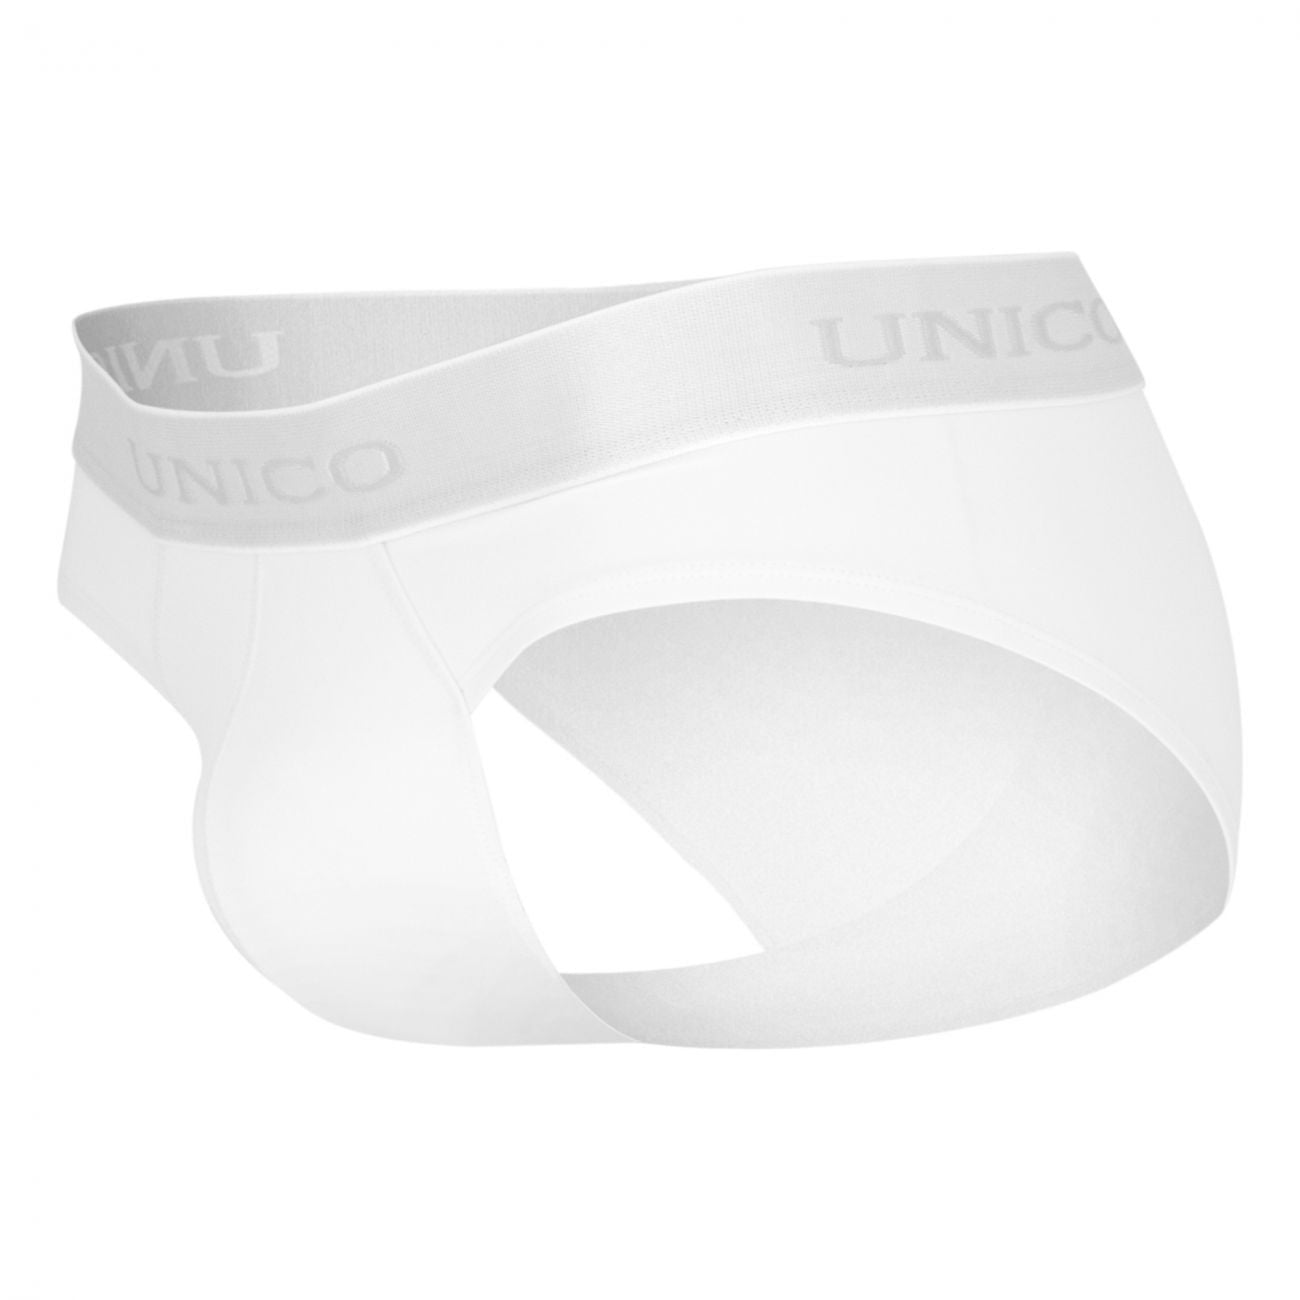 Unico (1612020110300) Briefs Cristalino Microfiber